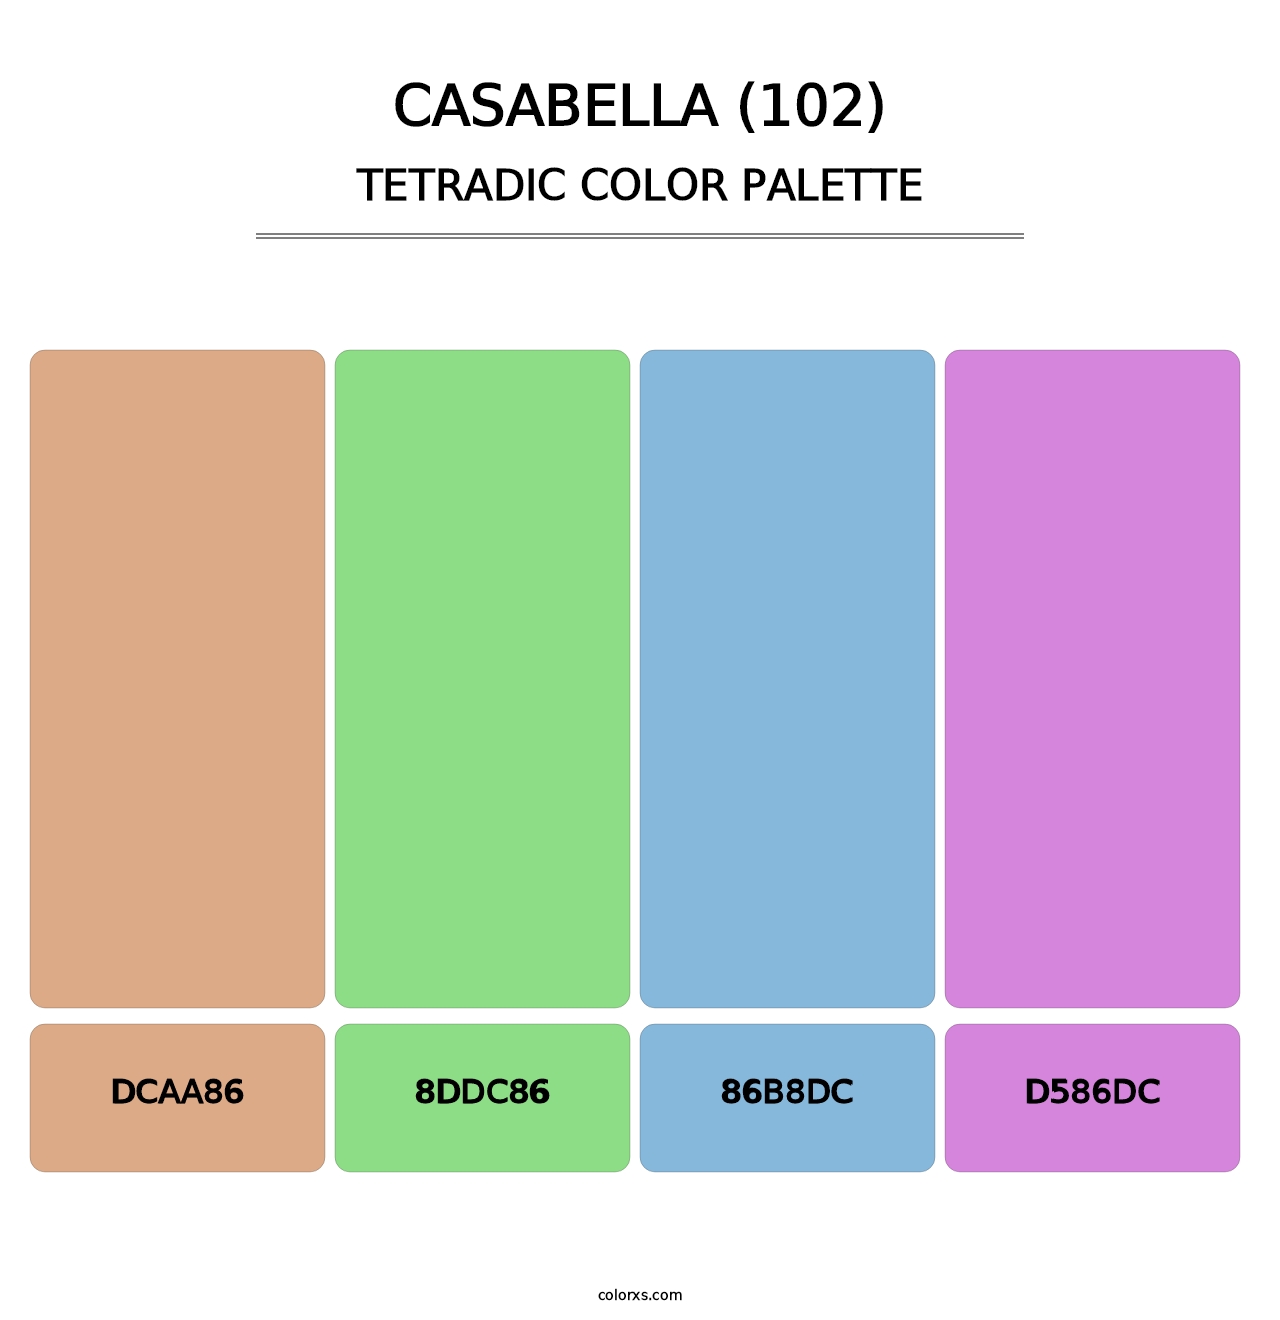 Casabella (102) - Tetradic Color Palette